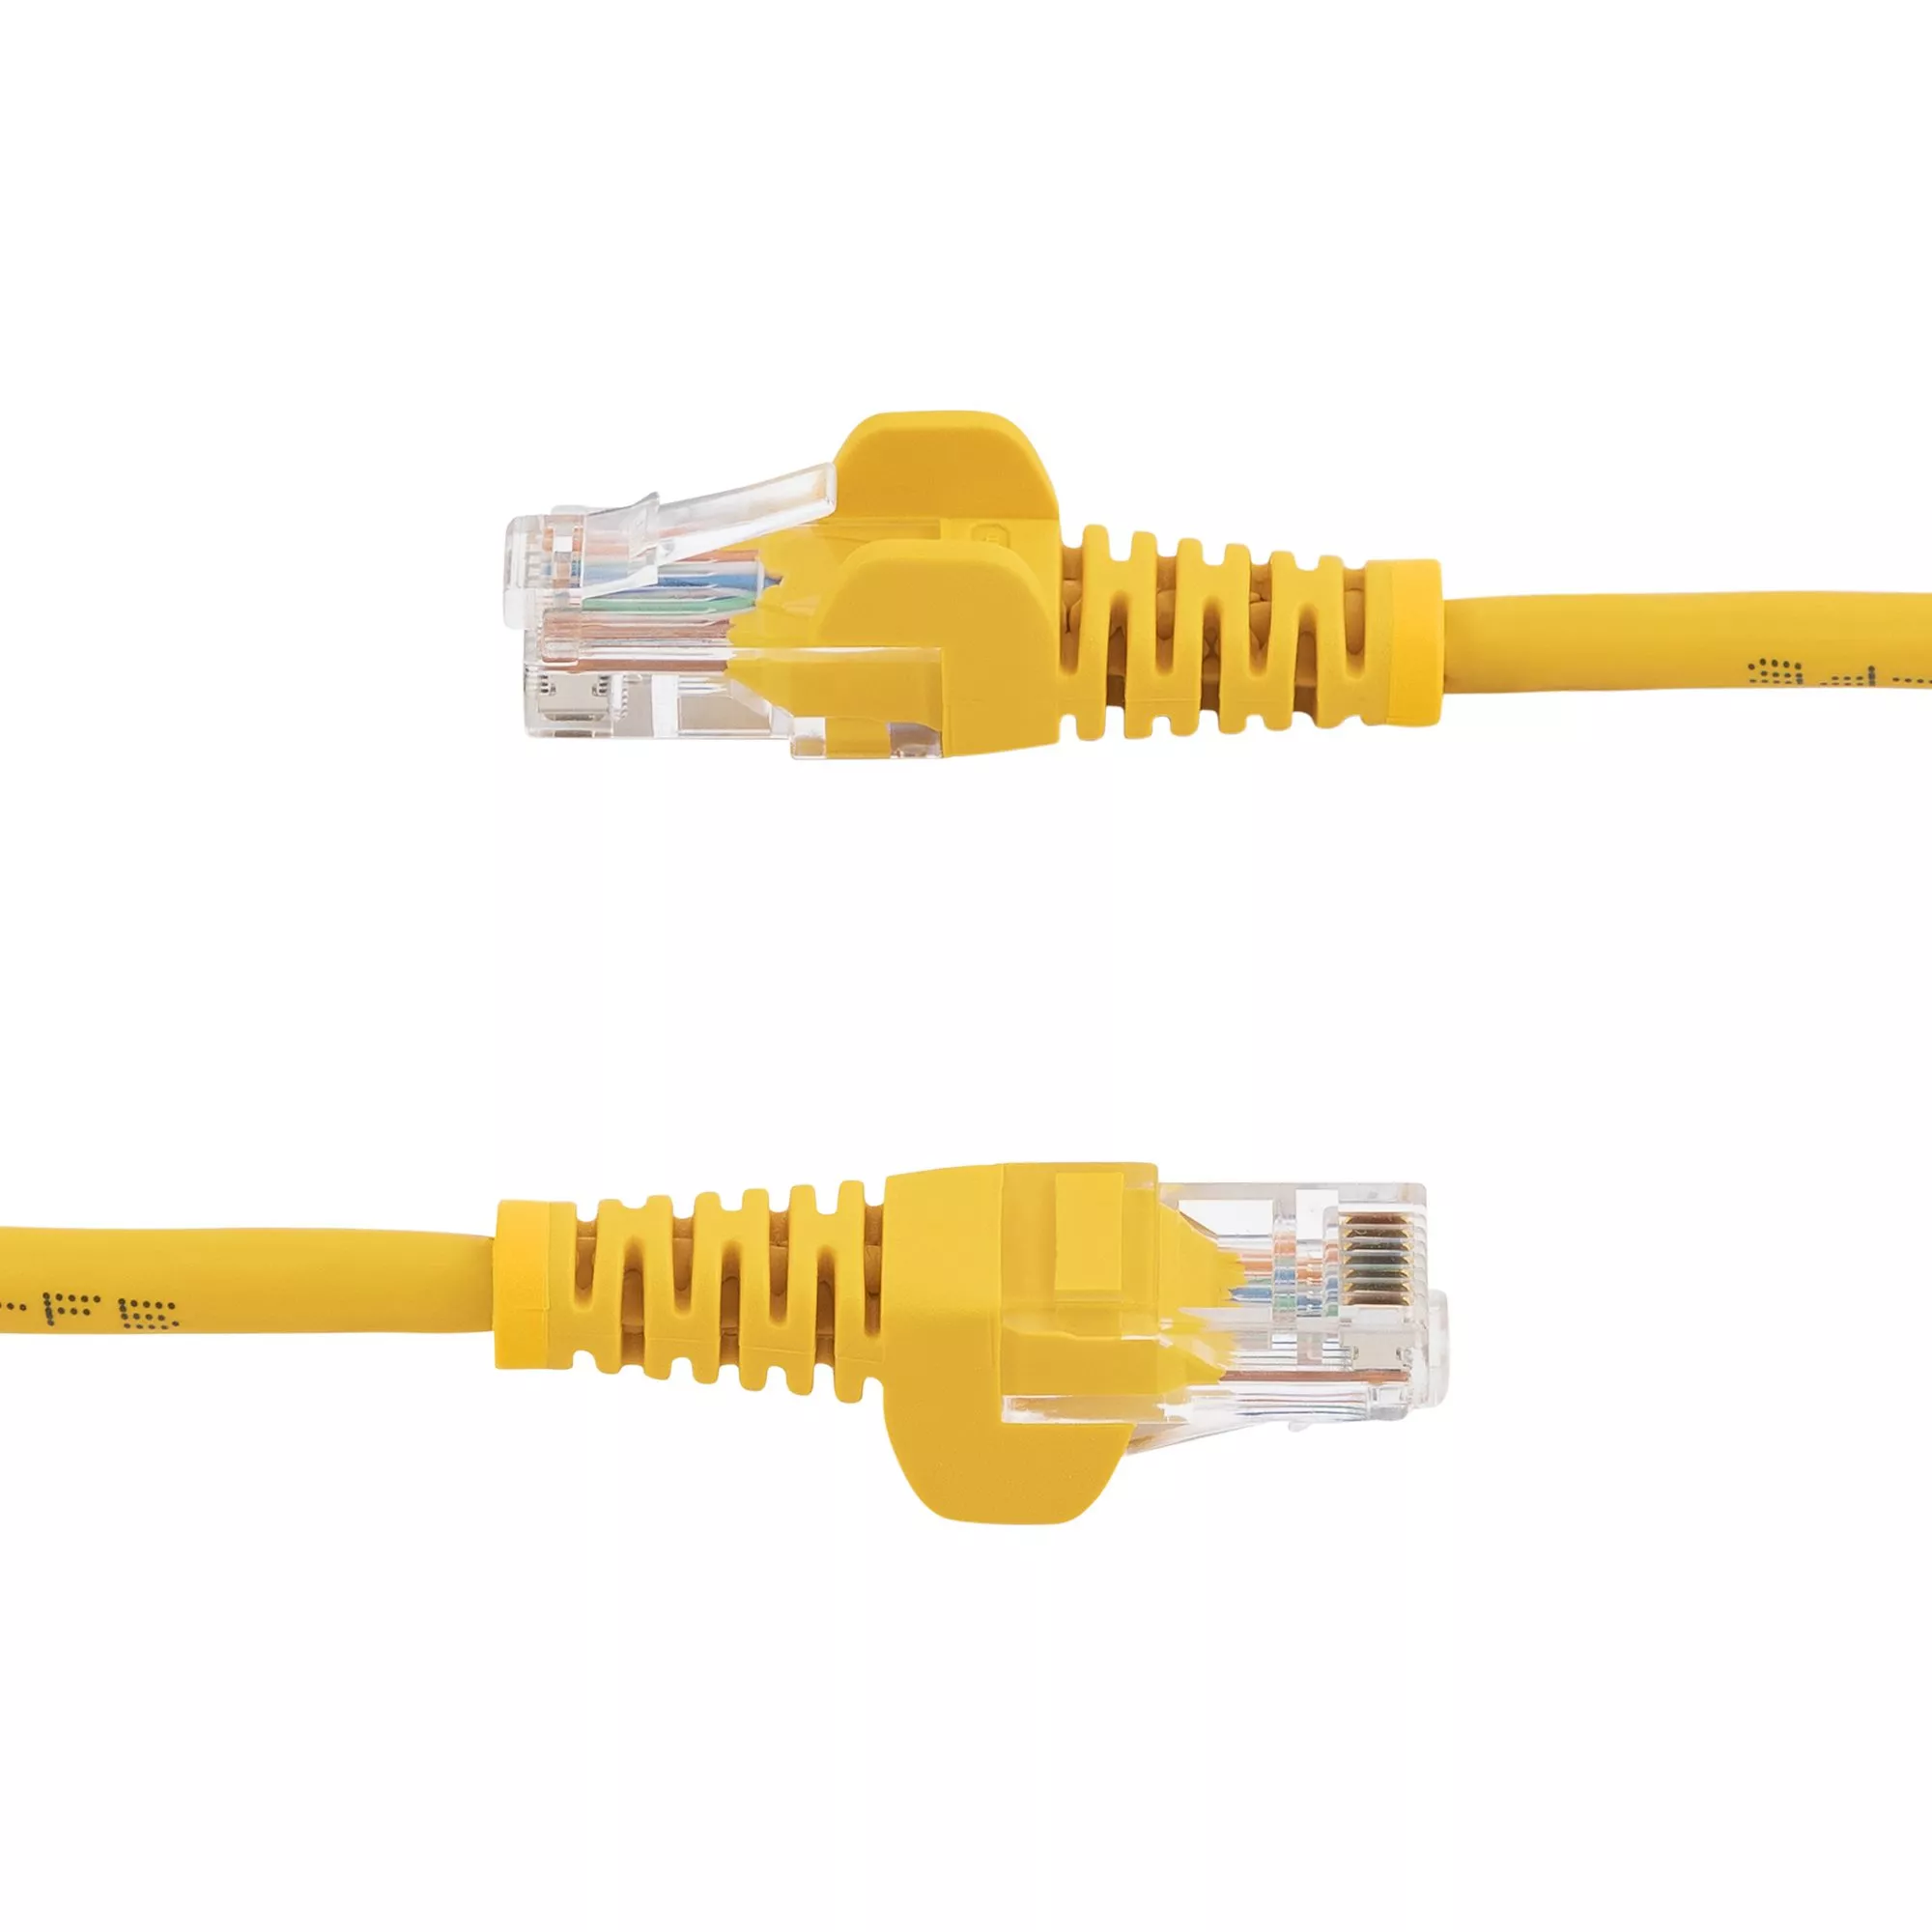 Achat StarTech.com Câble réseau Cat5e sans crochet de 10 sur hello RSE - visuel 3